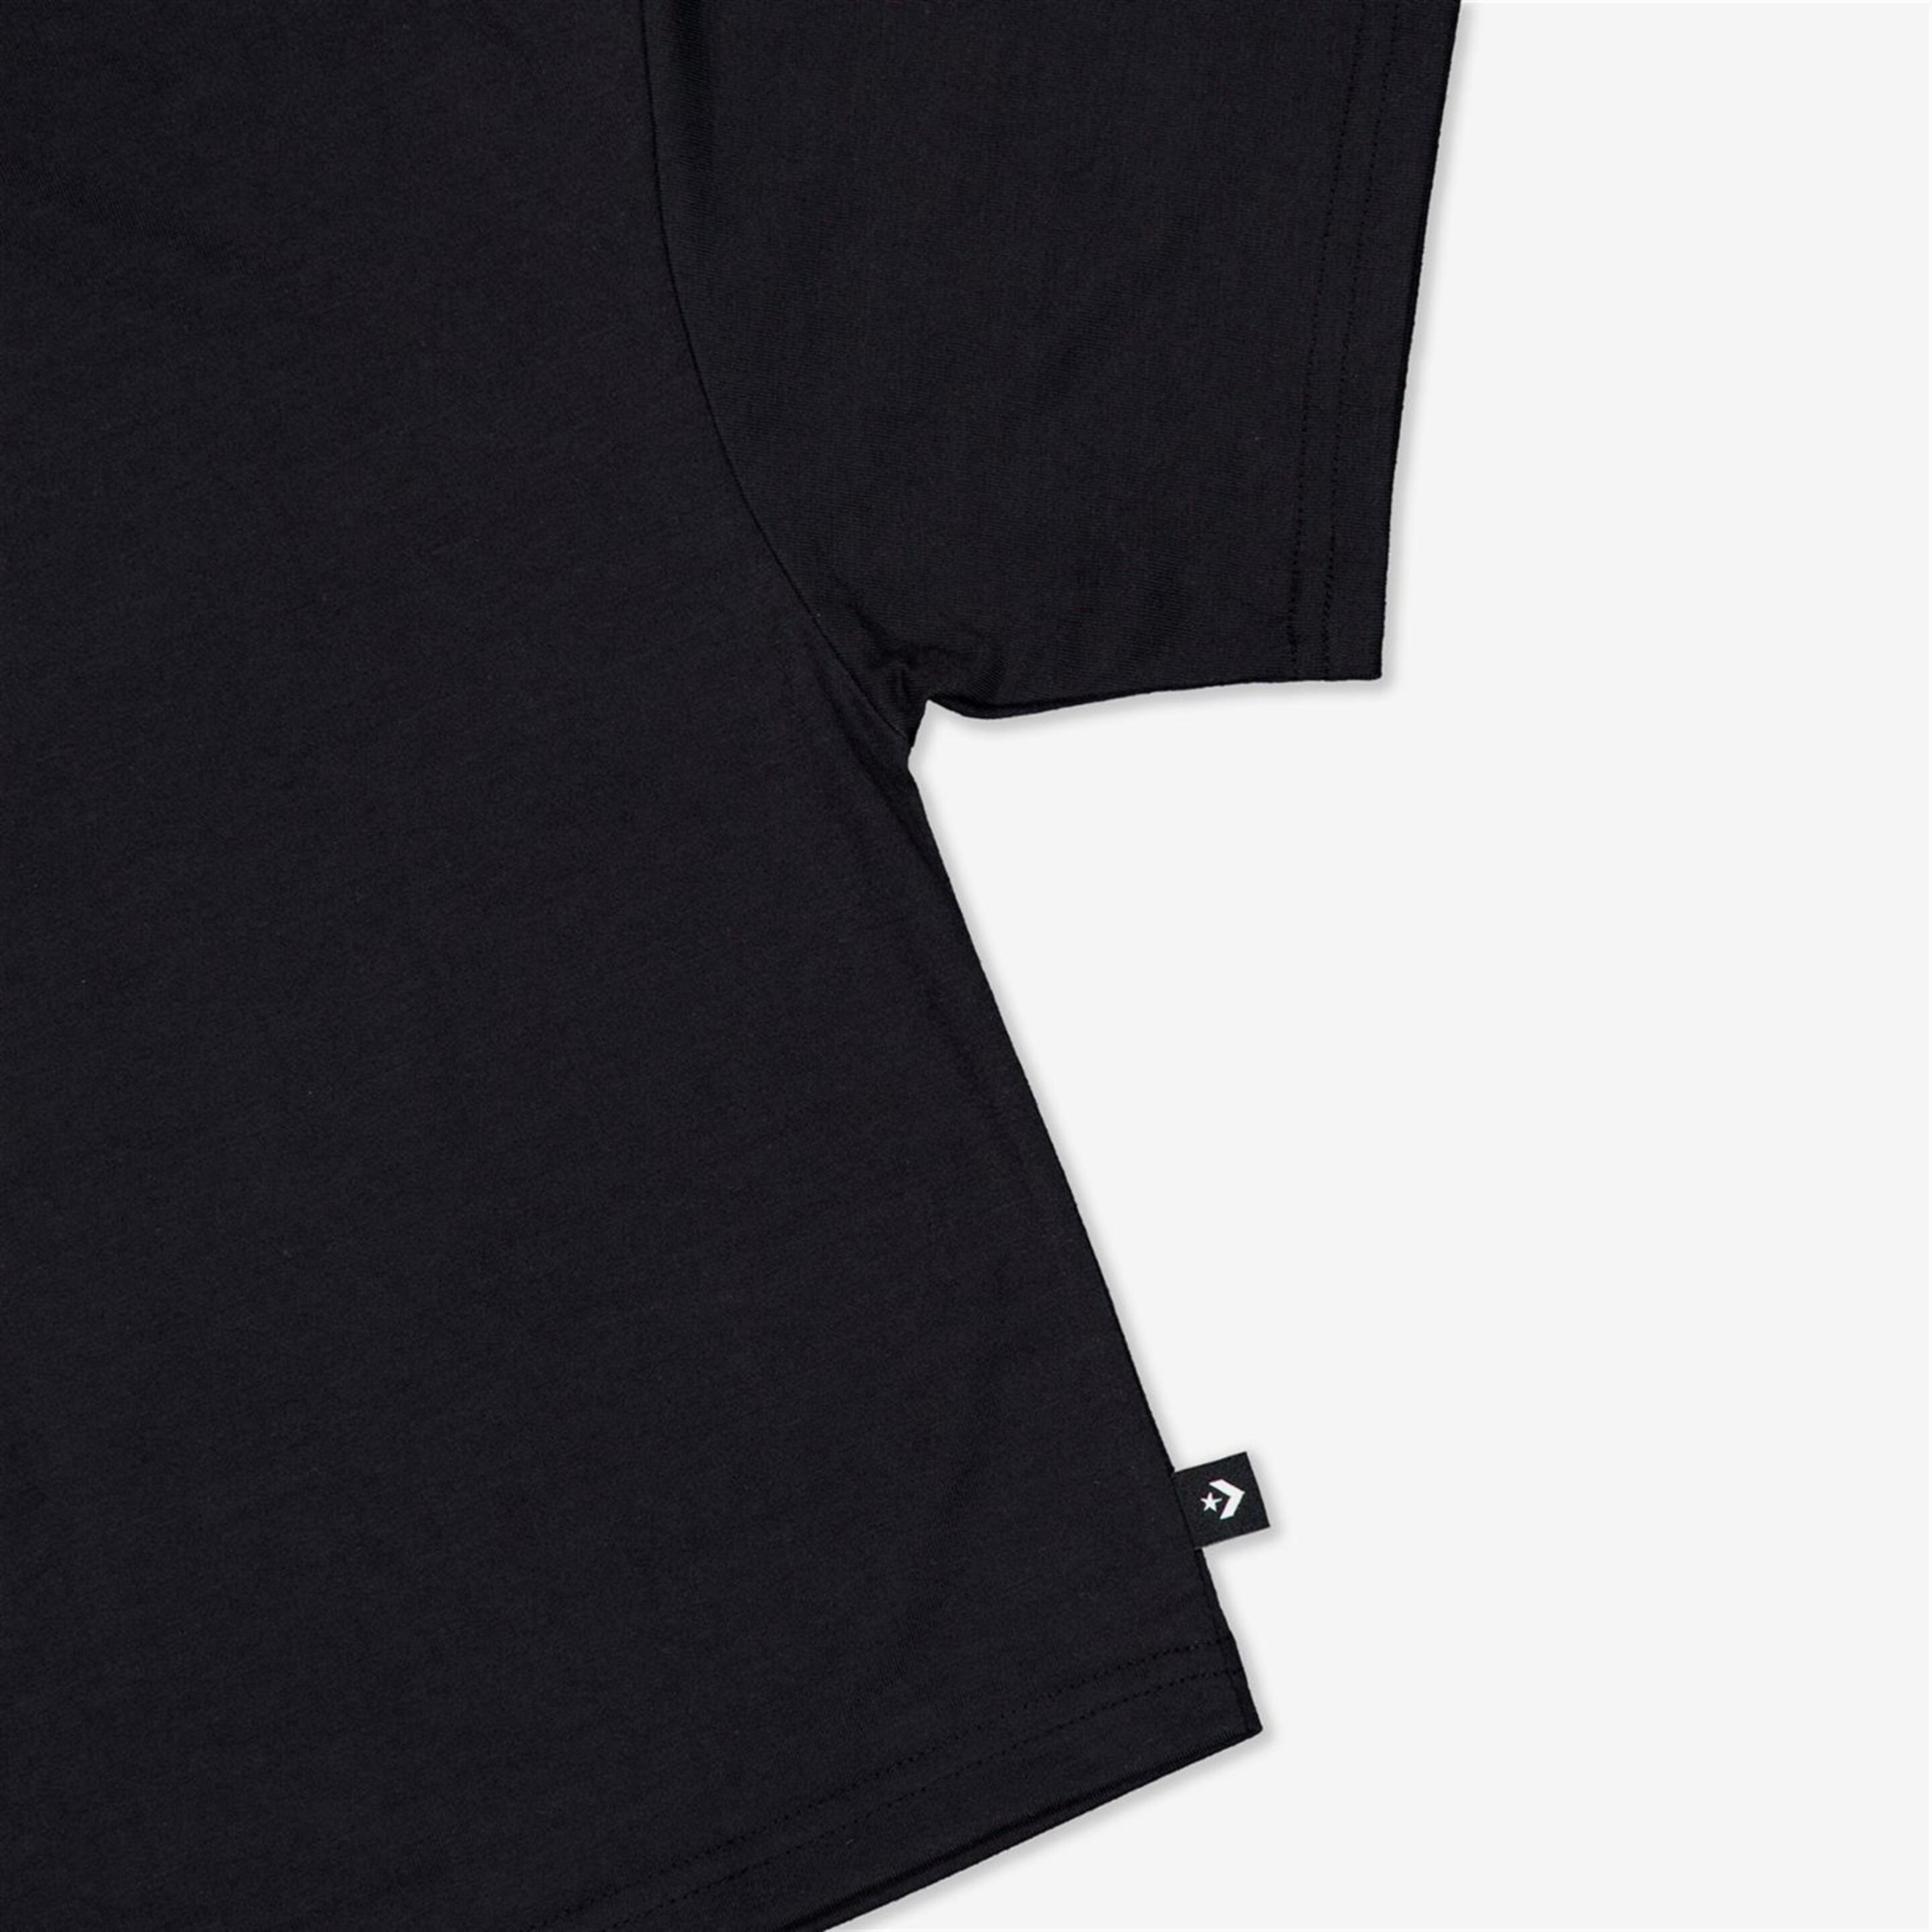 Camiseta Converse - Negro - Camiseta Boxy Niña